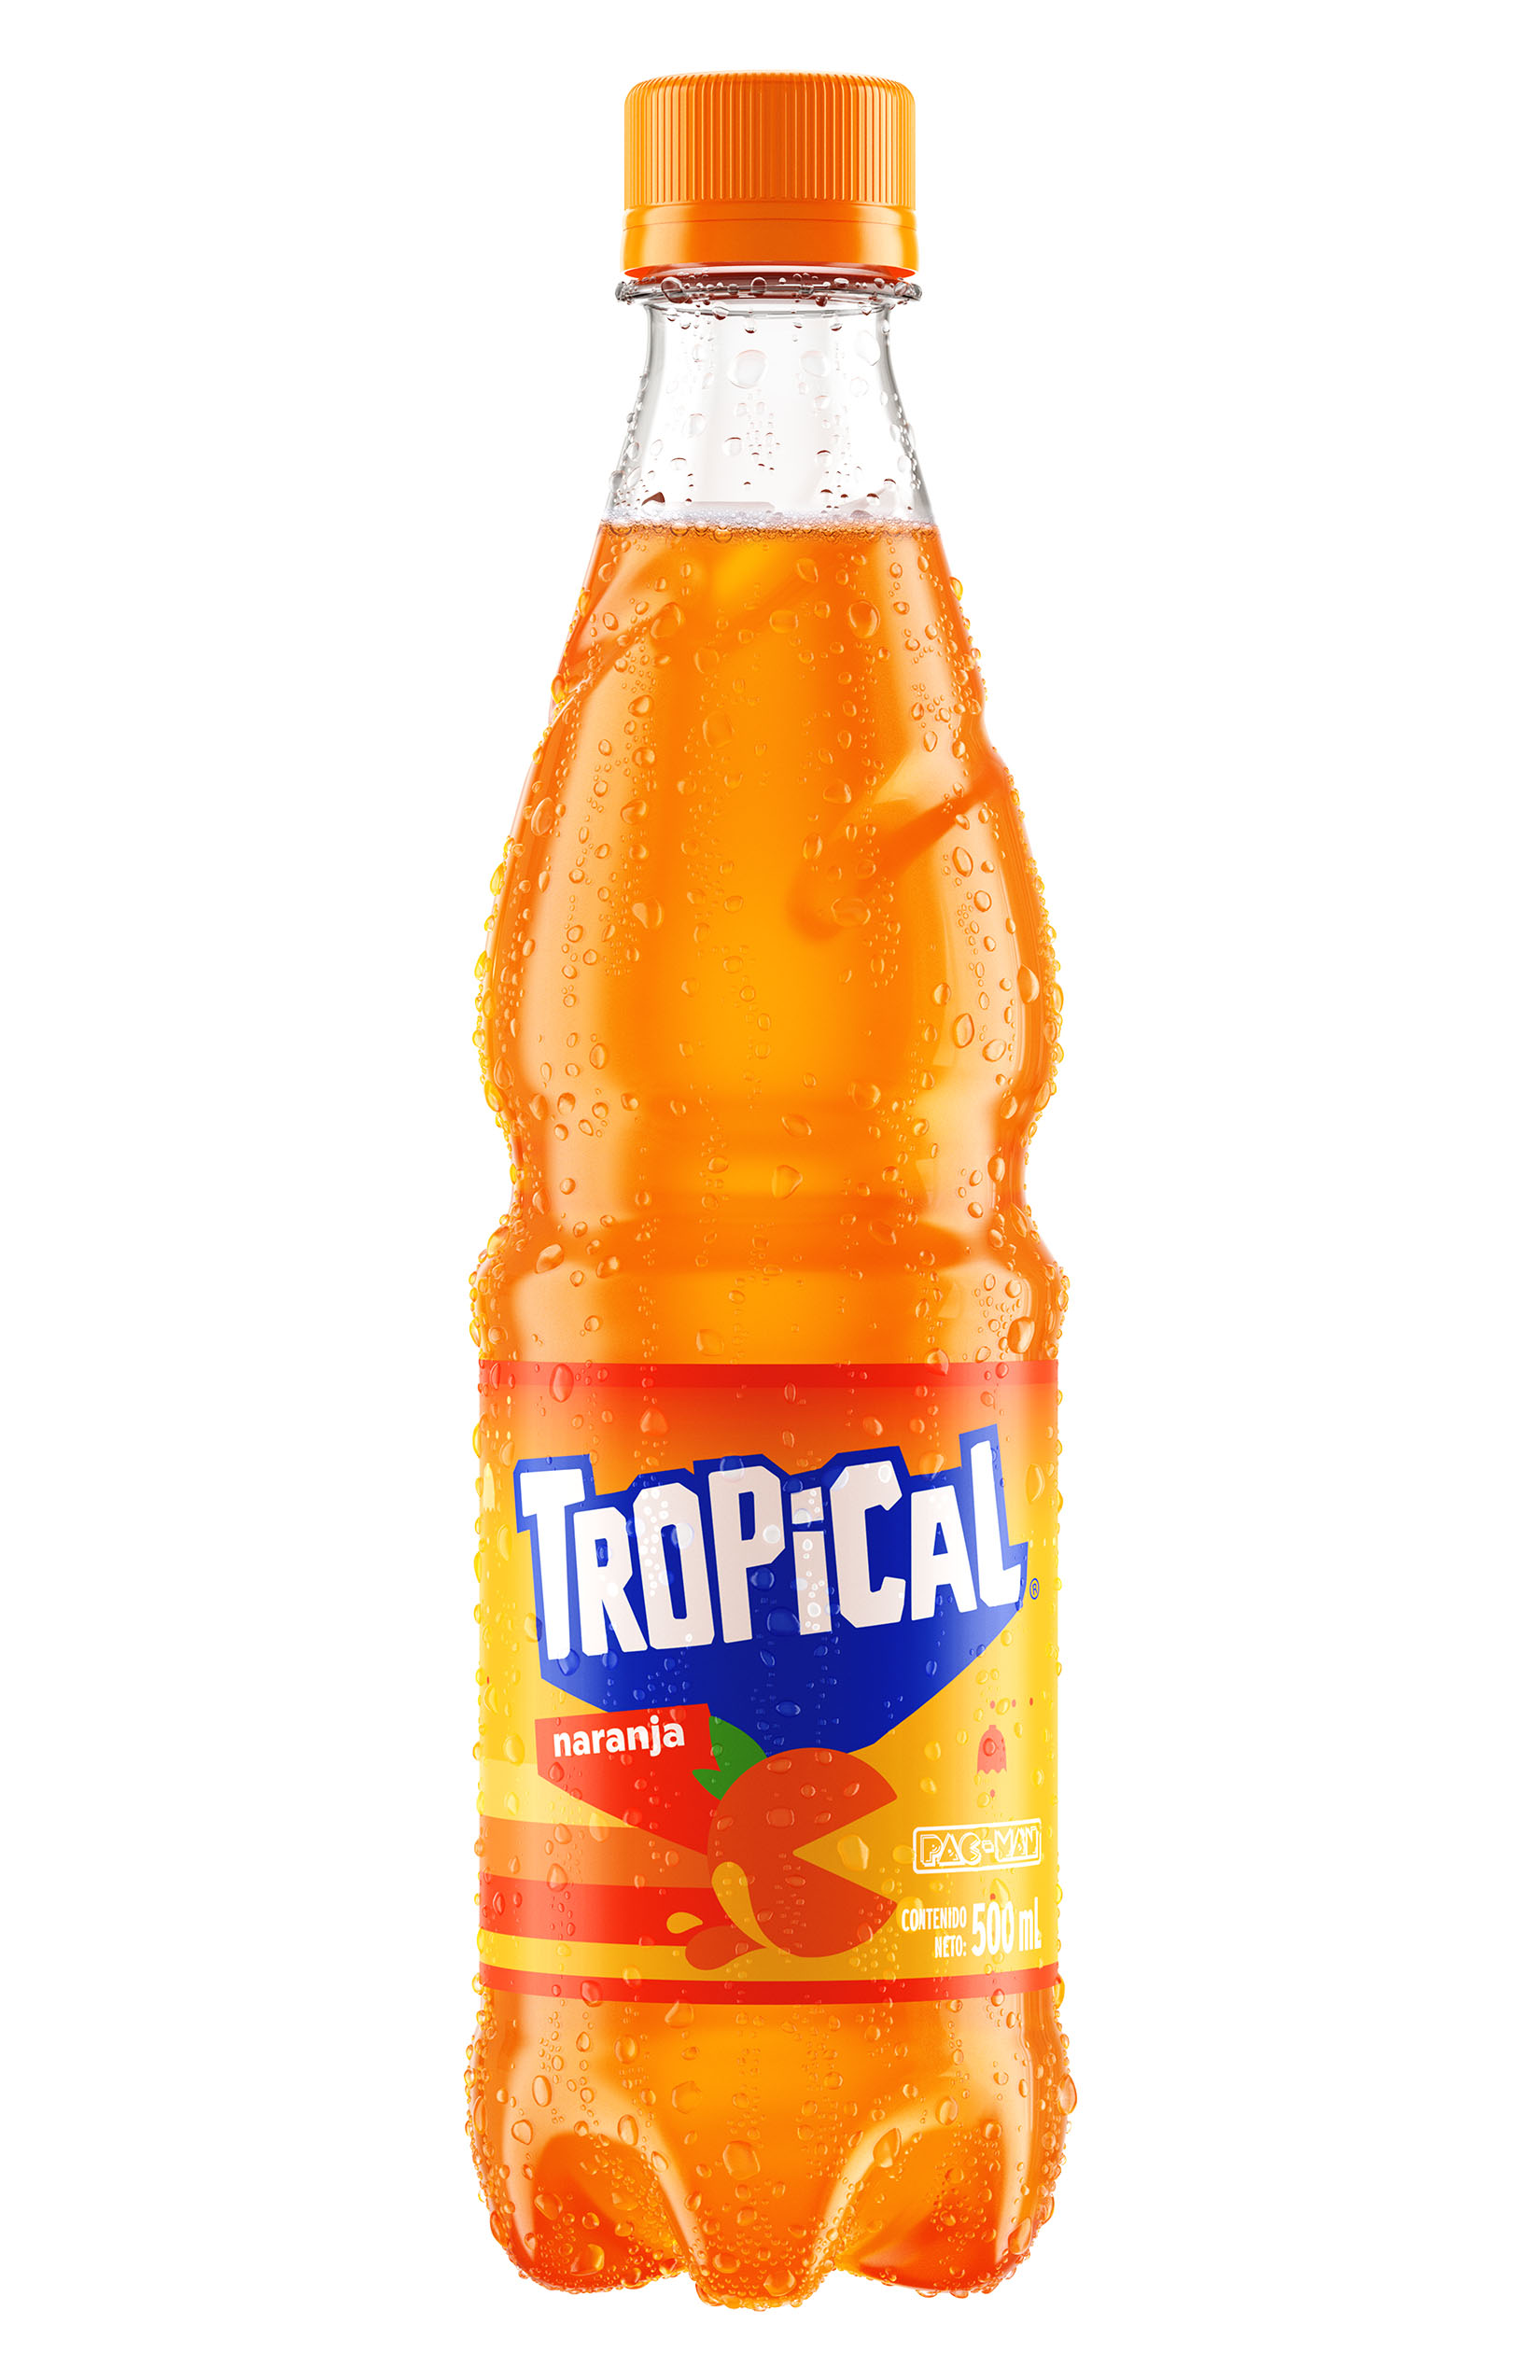 : Botella de 500 ml de Tropical sabor banana en su edición limitada Tropical Pac-man